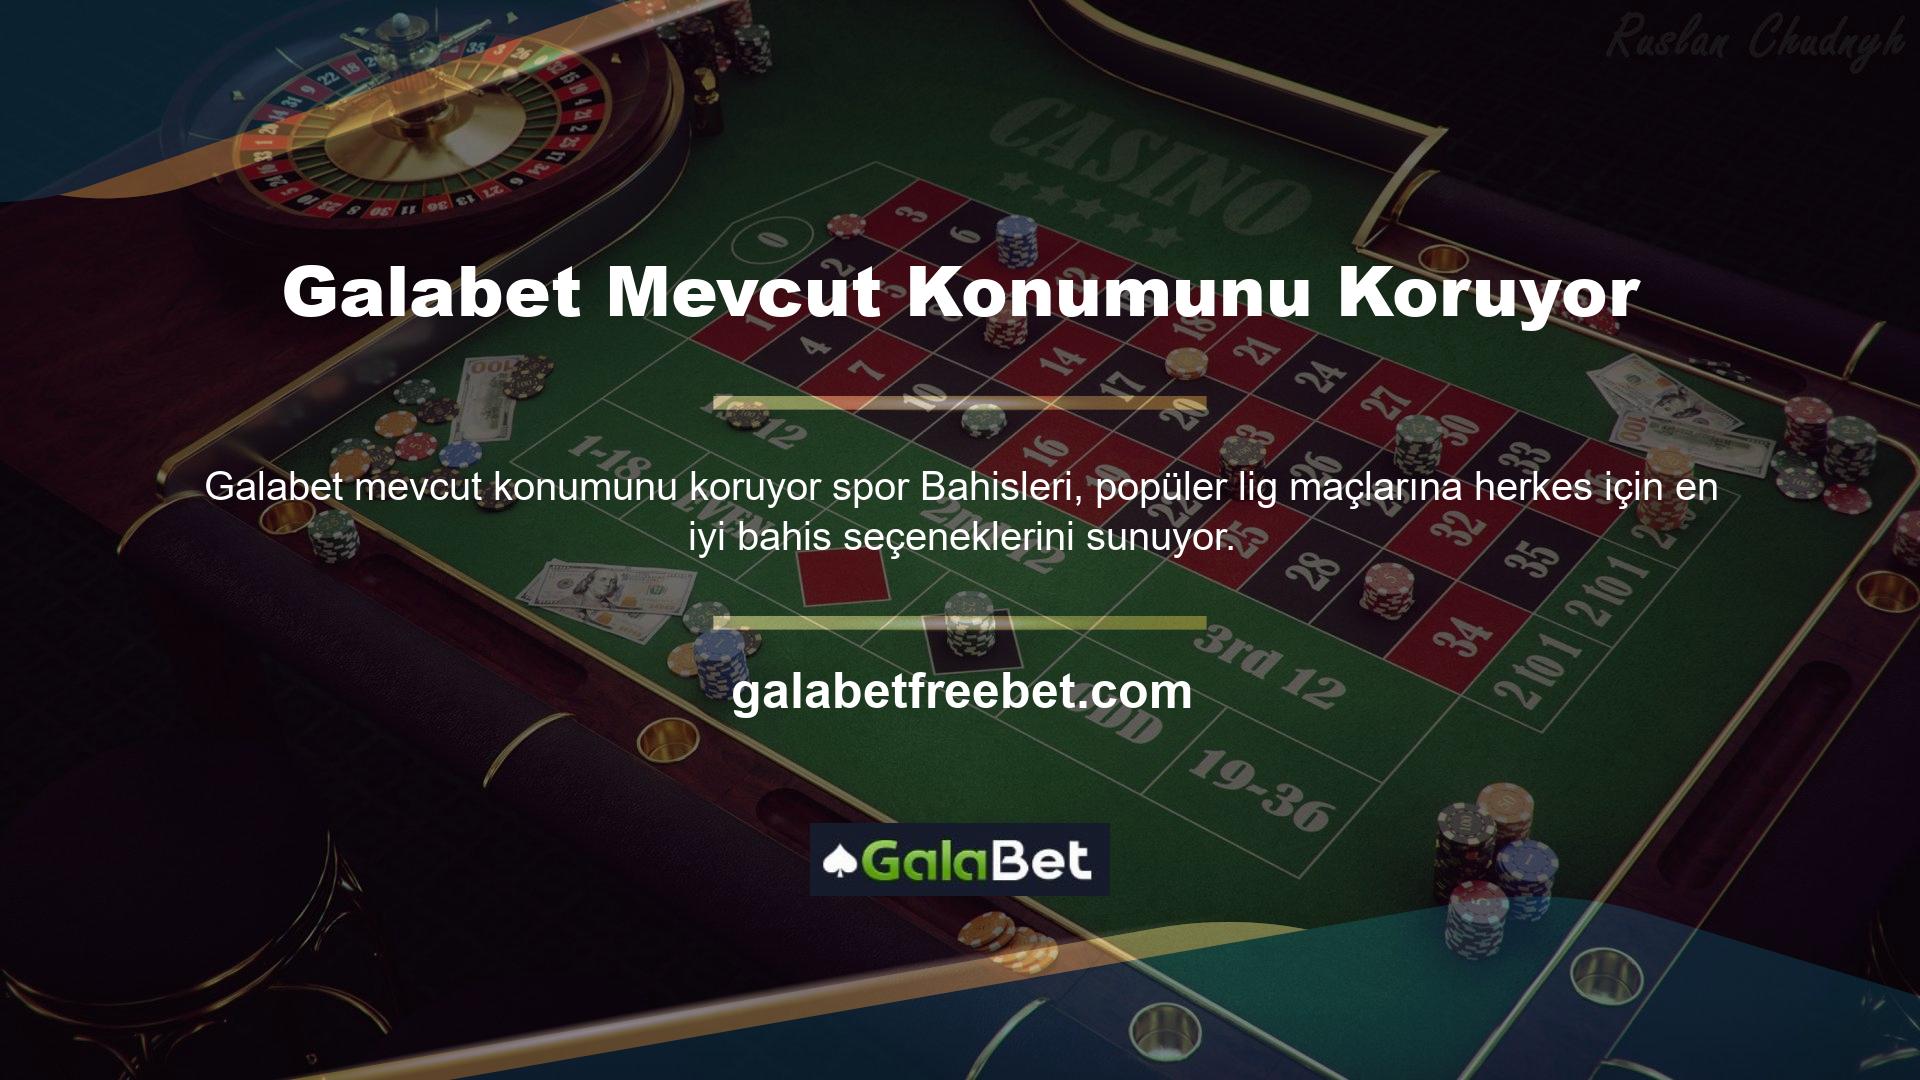 Tanınmış bir çevrimiçi casino şirketi olan Galabet, Türkiye'de uzun yıllardan beri faaliyet göstermekte ve hem birinci sınıf casinoların hem de canlı oyunların en iyisini sunmaktadır